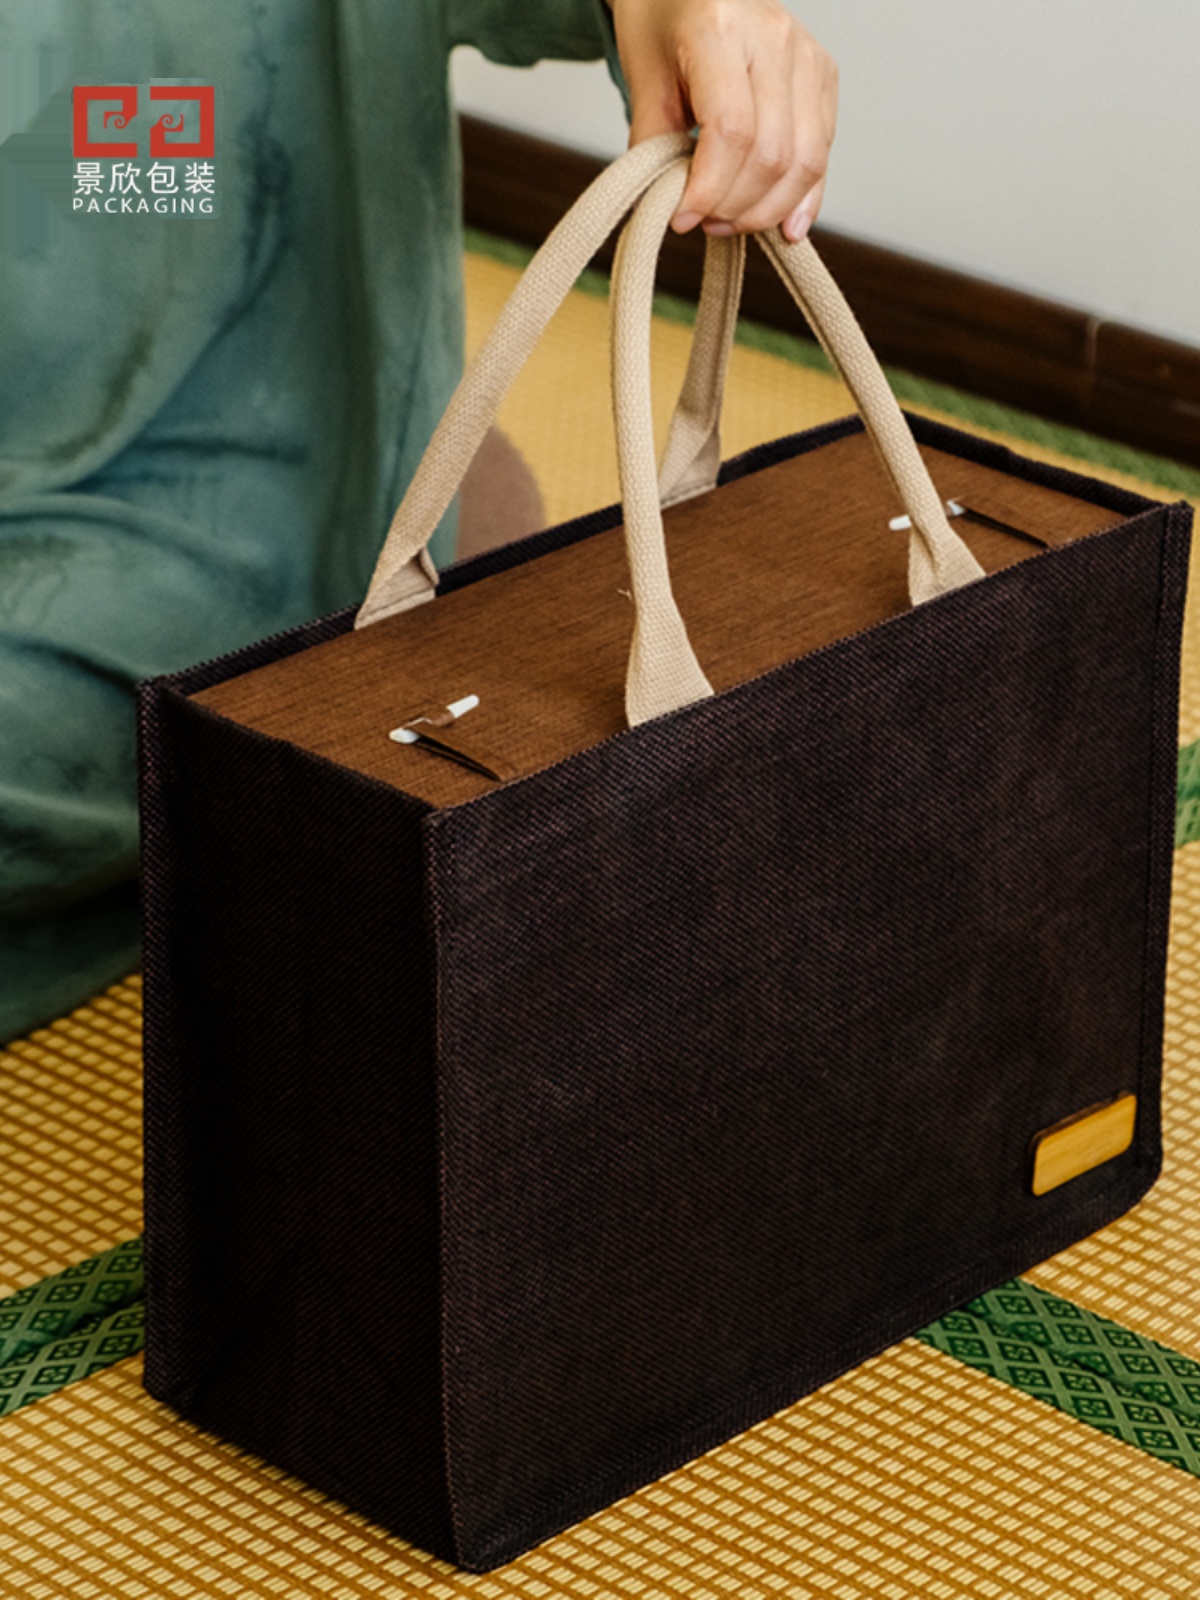 高档礼品盒长方形瓷器包装盒书本桌面首饰收纳盒古玩锦盒订做定制